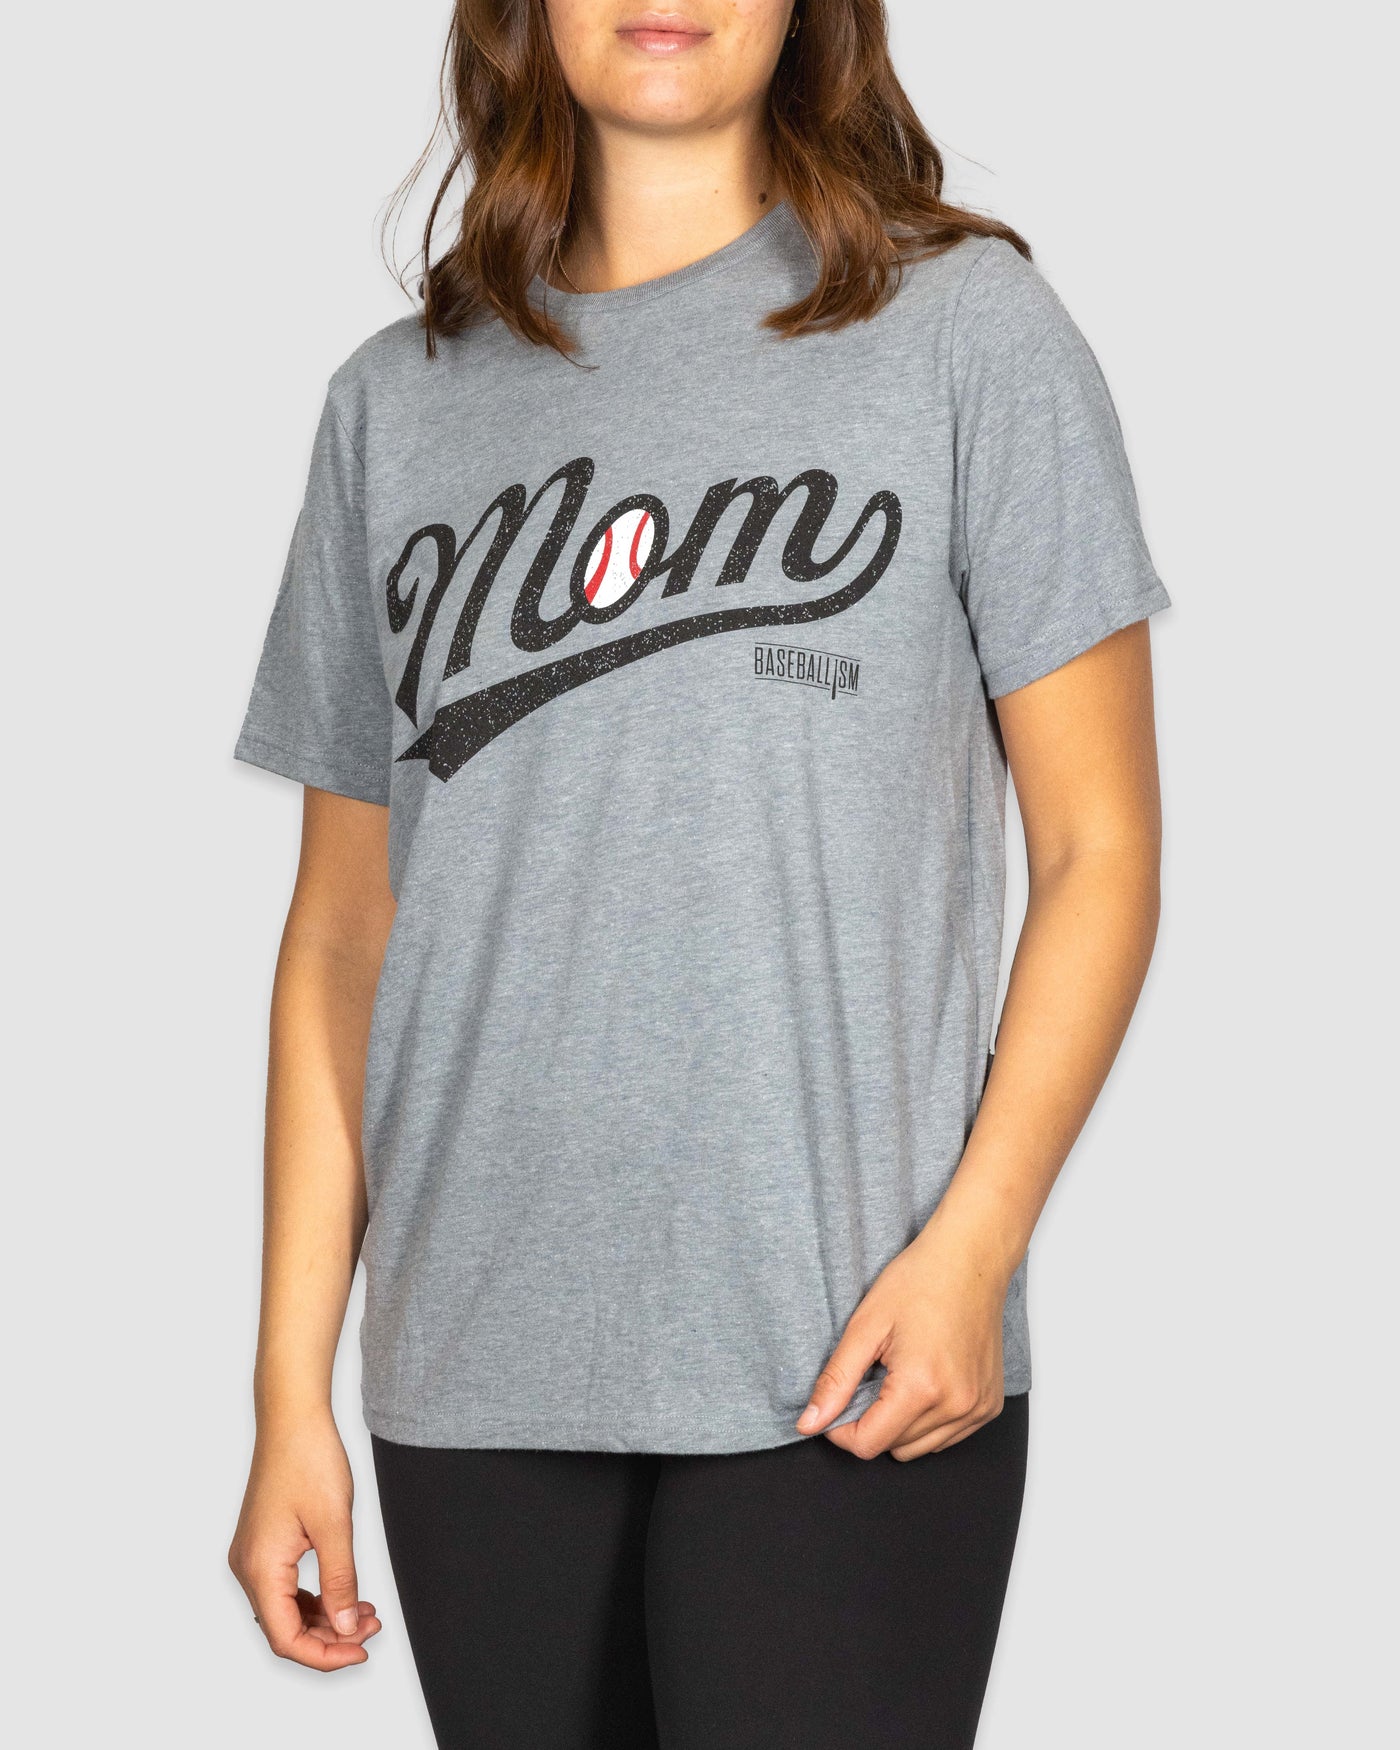 ベースボールママ - ウォームアップ T シャツ